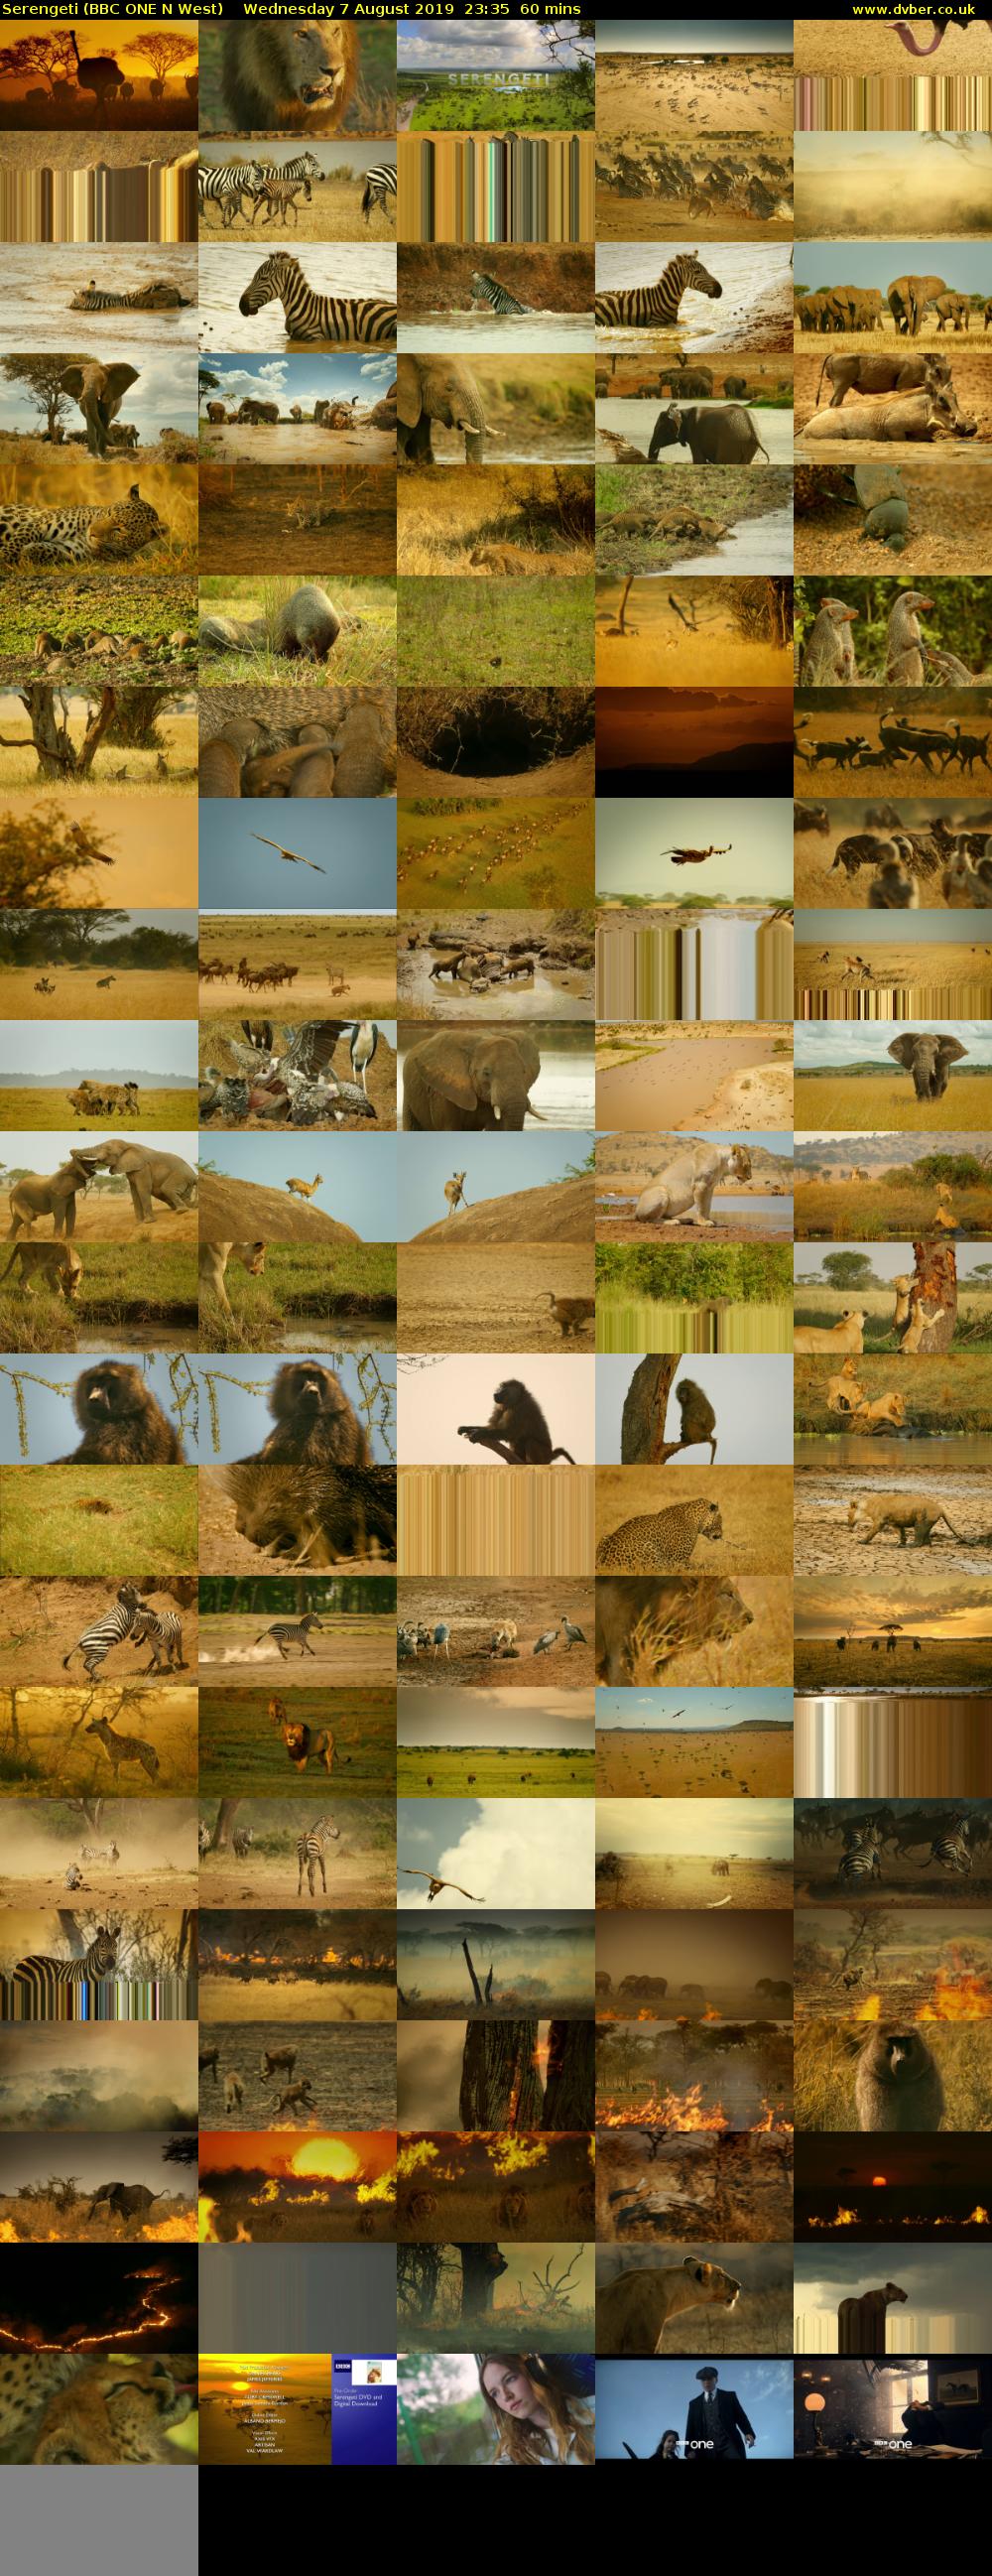 Serengeti (BBC ONE N West) Wednesday 7 August 2019 23:35 - 00:35